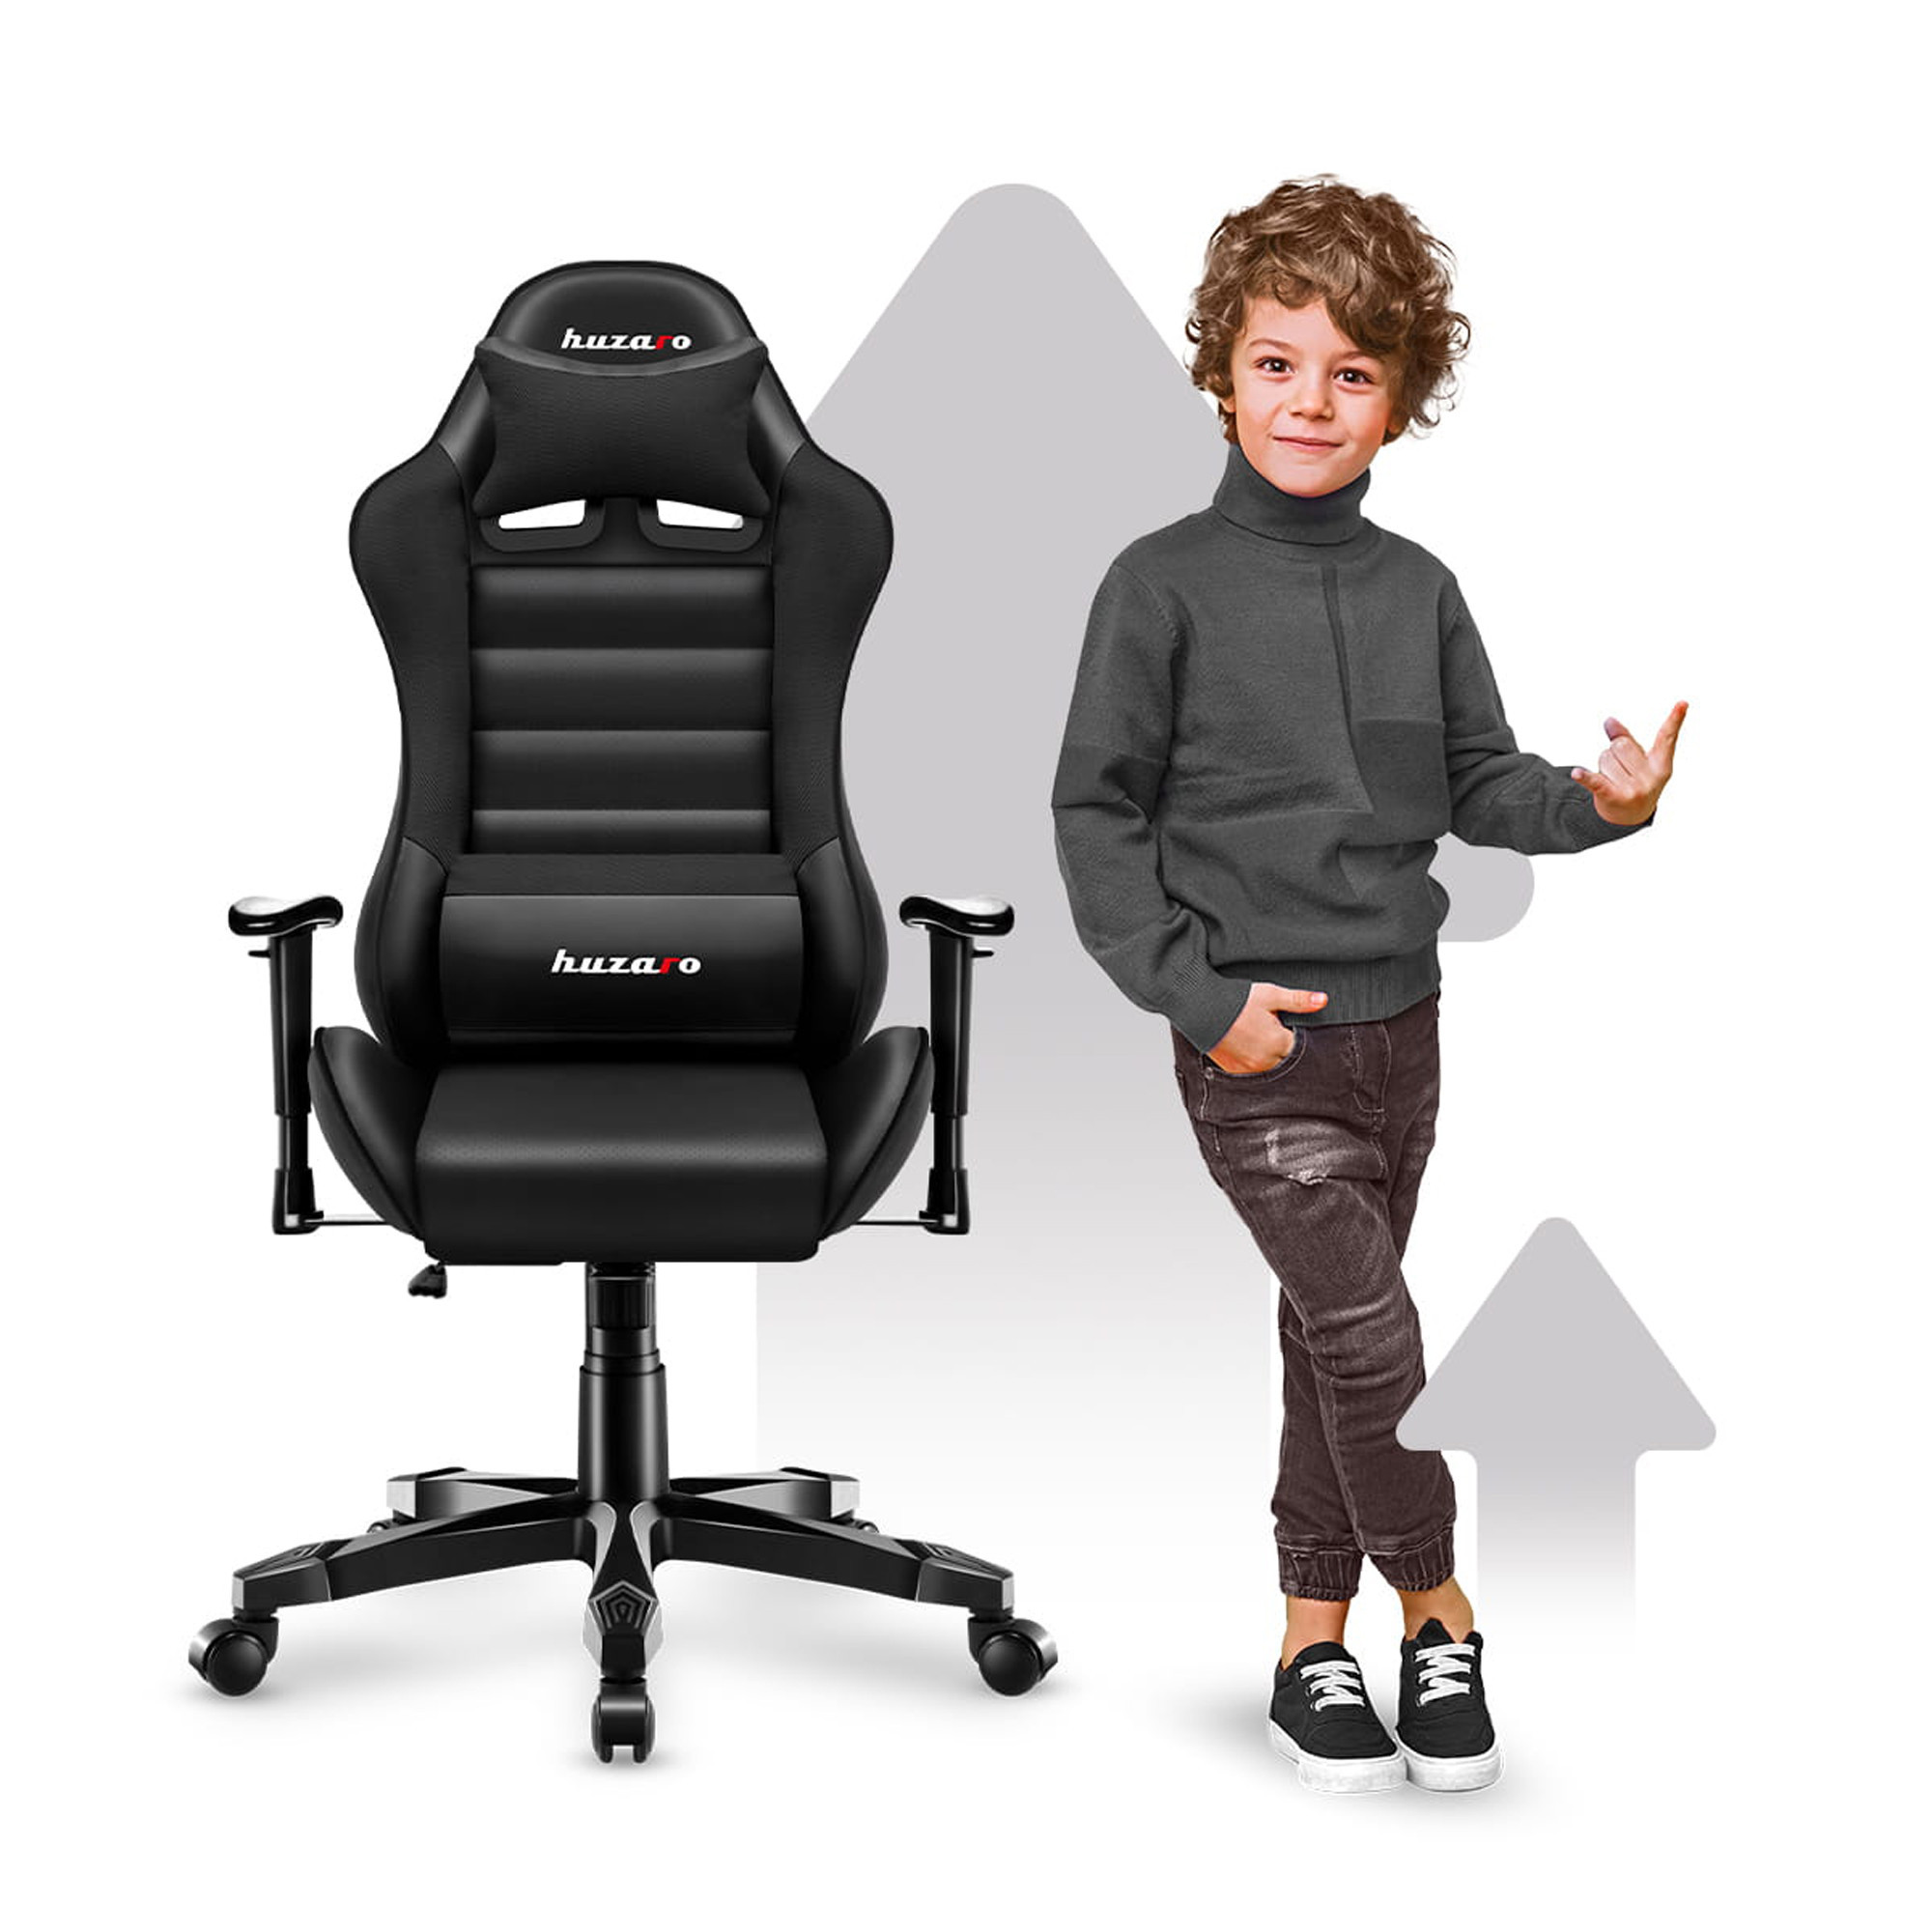 Detská herná stolička Ranger - 6.0 čierna